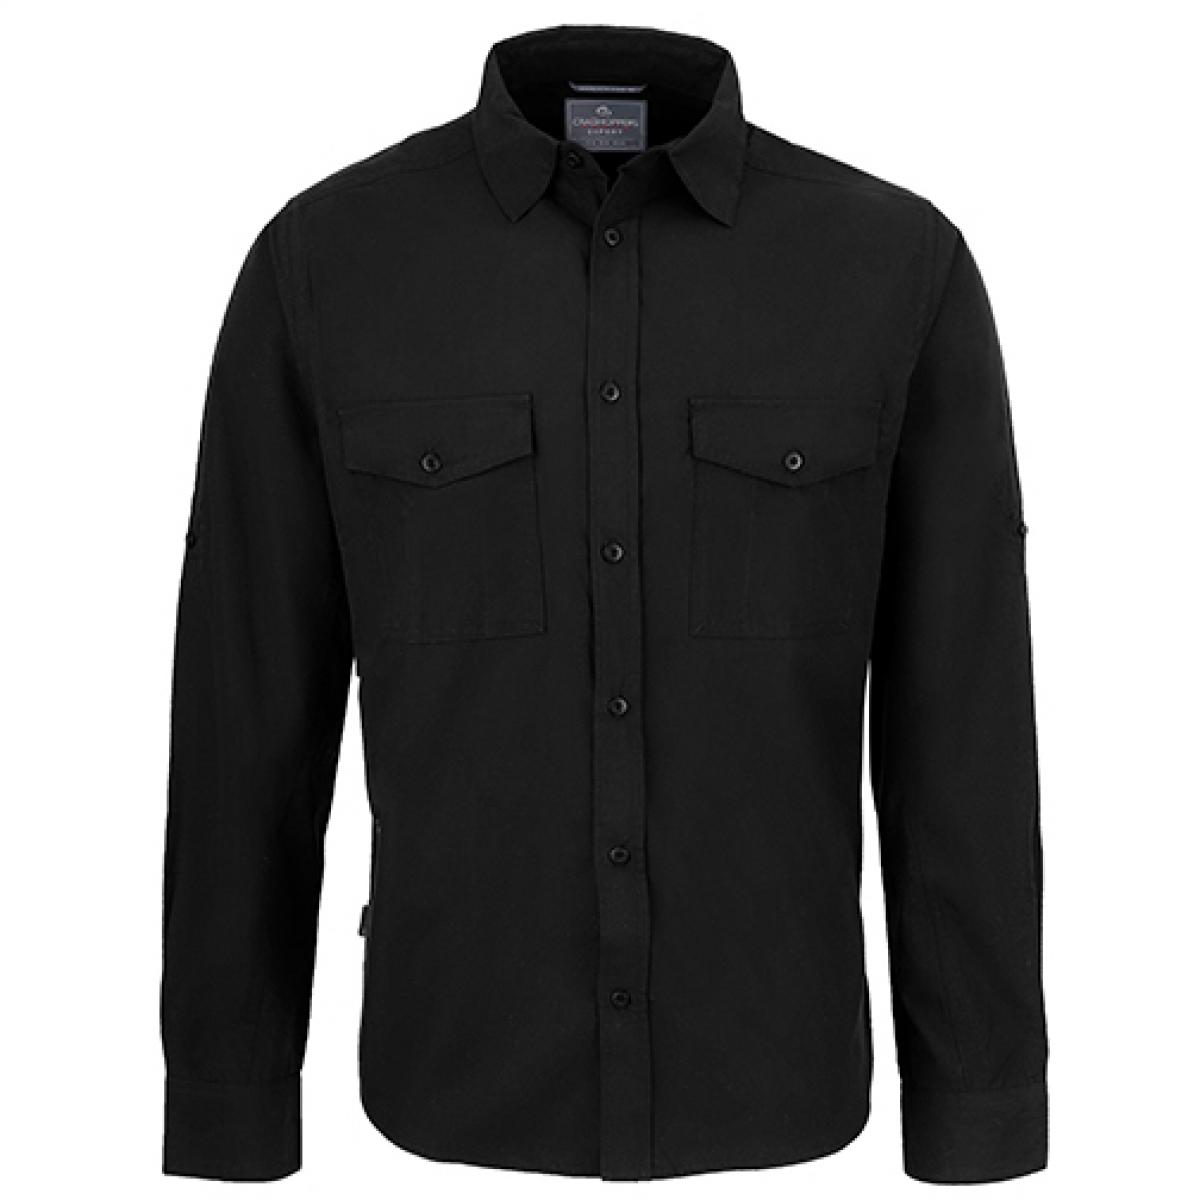 Hersteller: Craghoppers Expert Herstellernummer: CES001 Artikelbezeichnung: Expert Kiwi Long Sleeved Shirt Farbe: Black